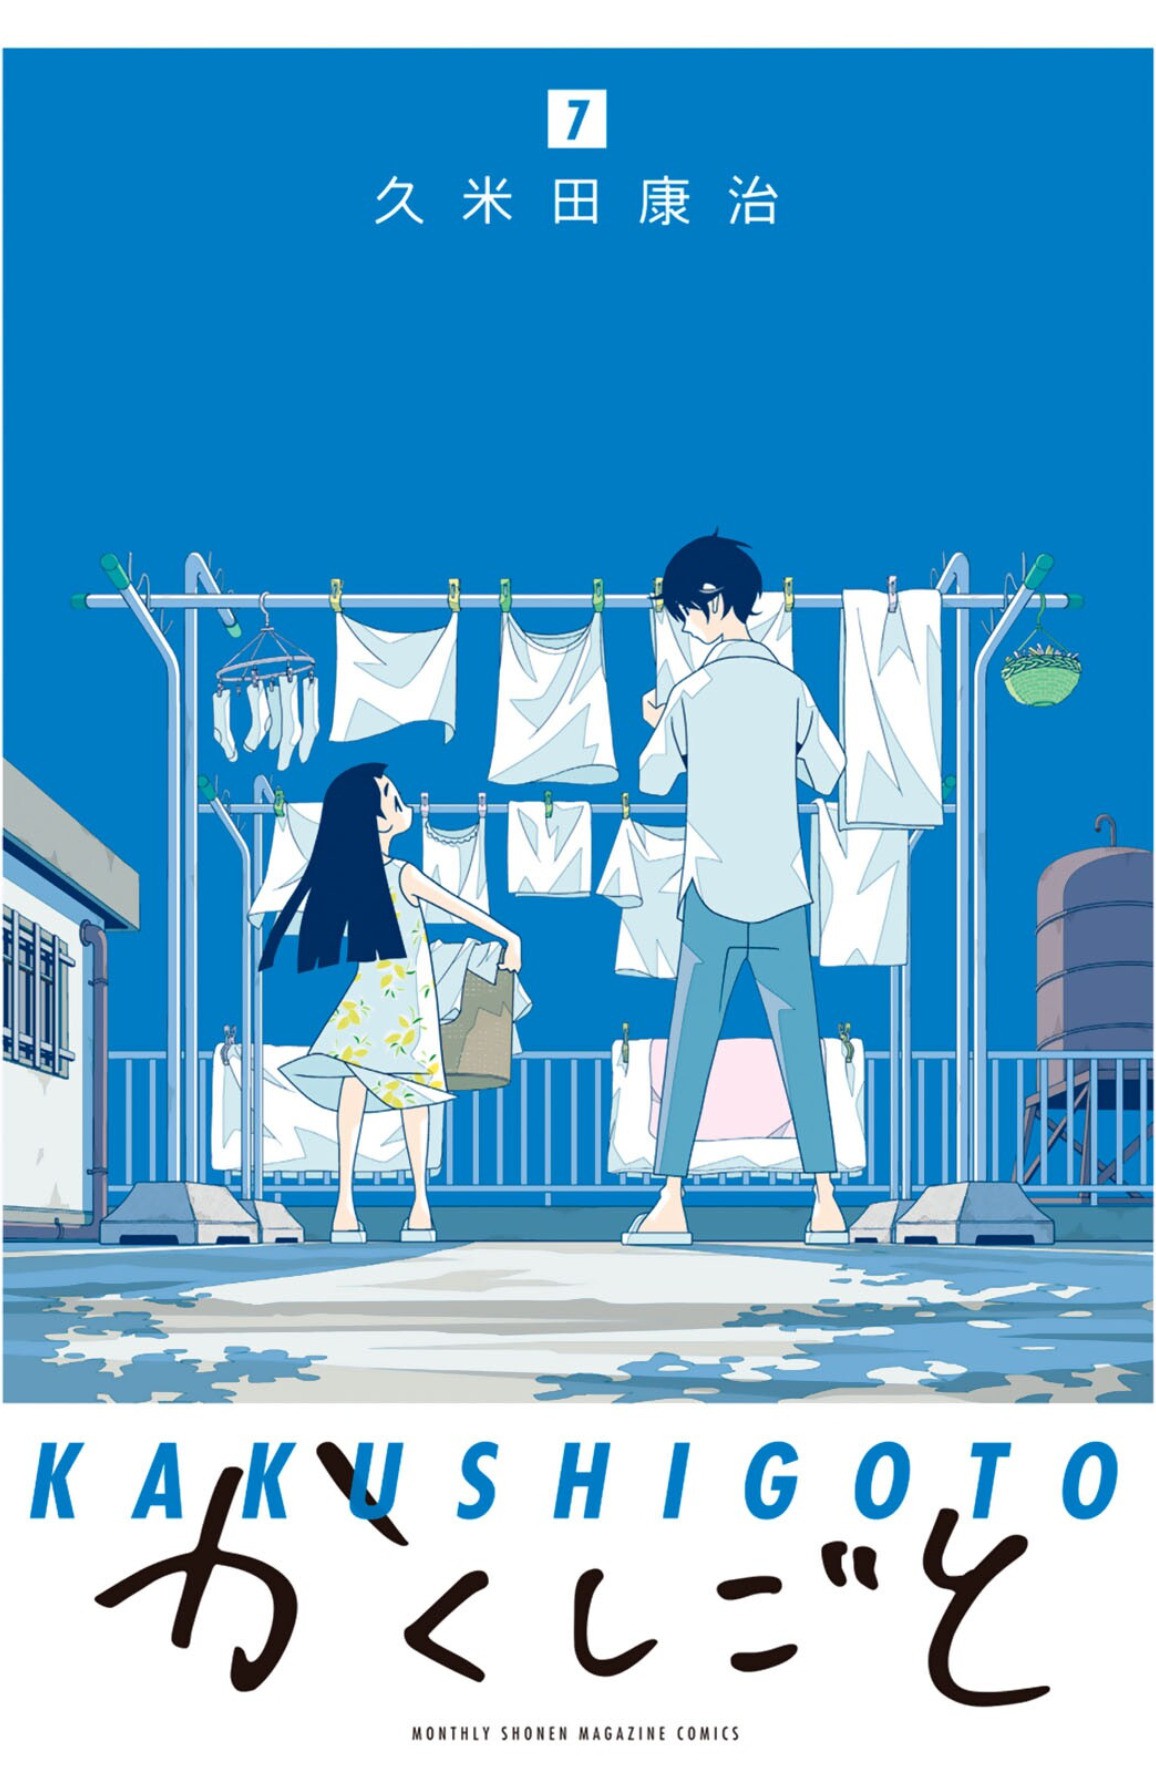 Kakushigoto Manga se bliža koncu